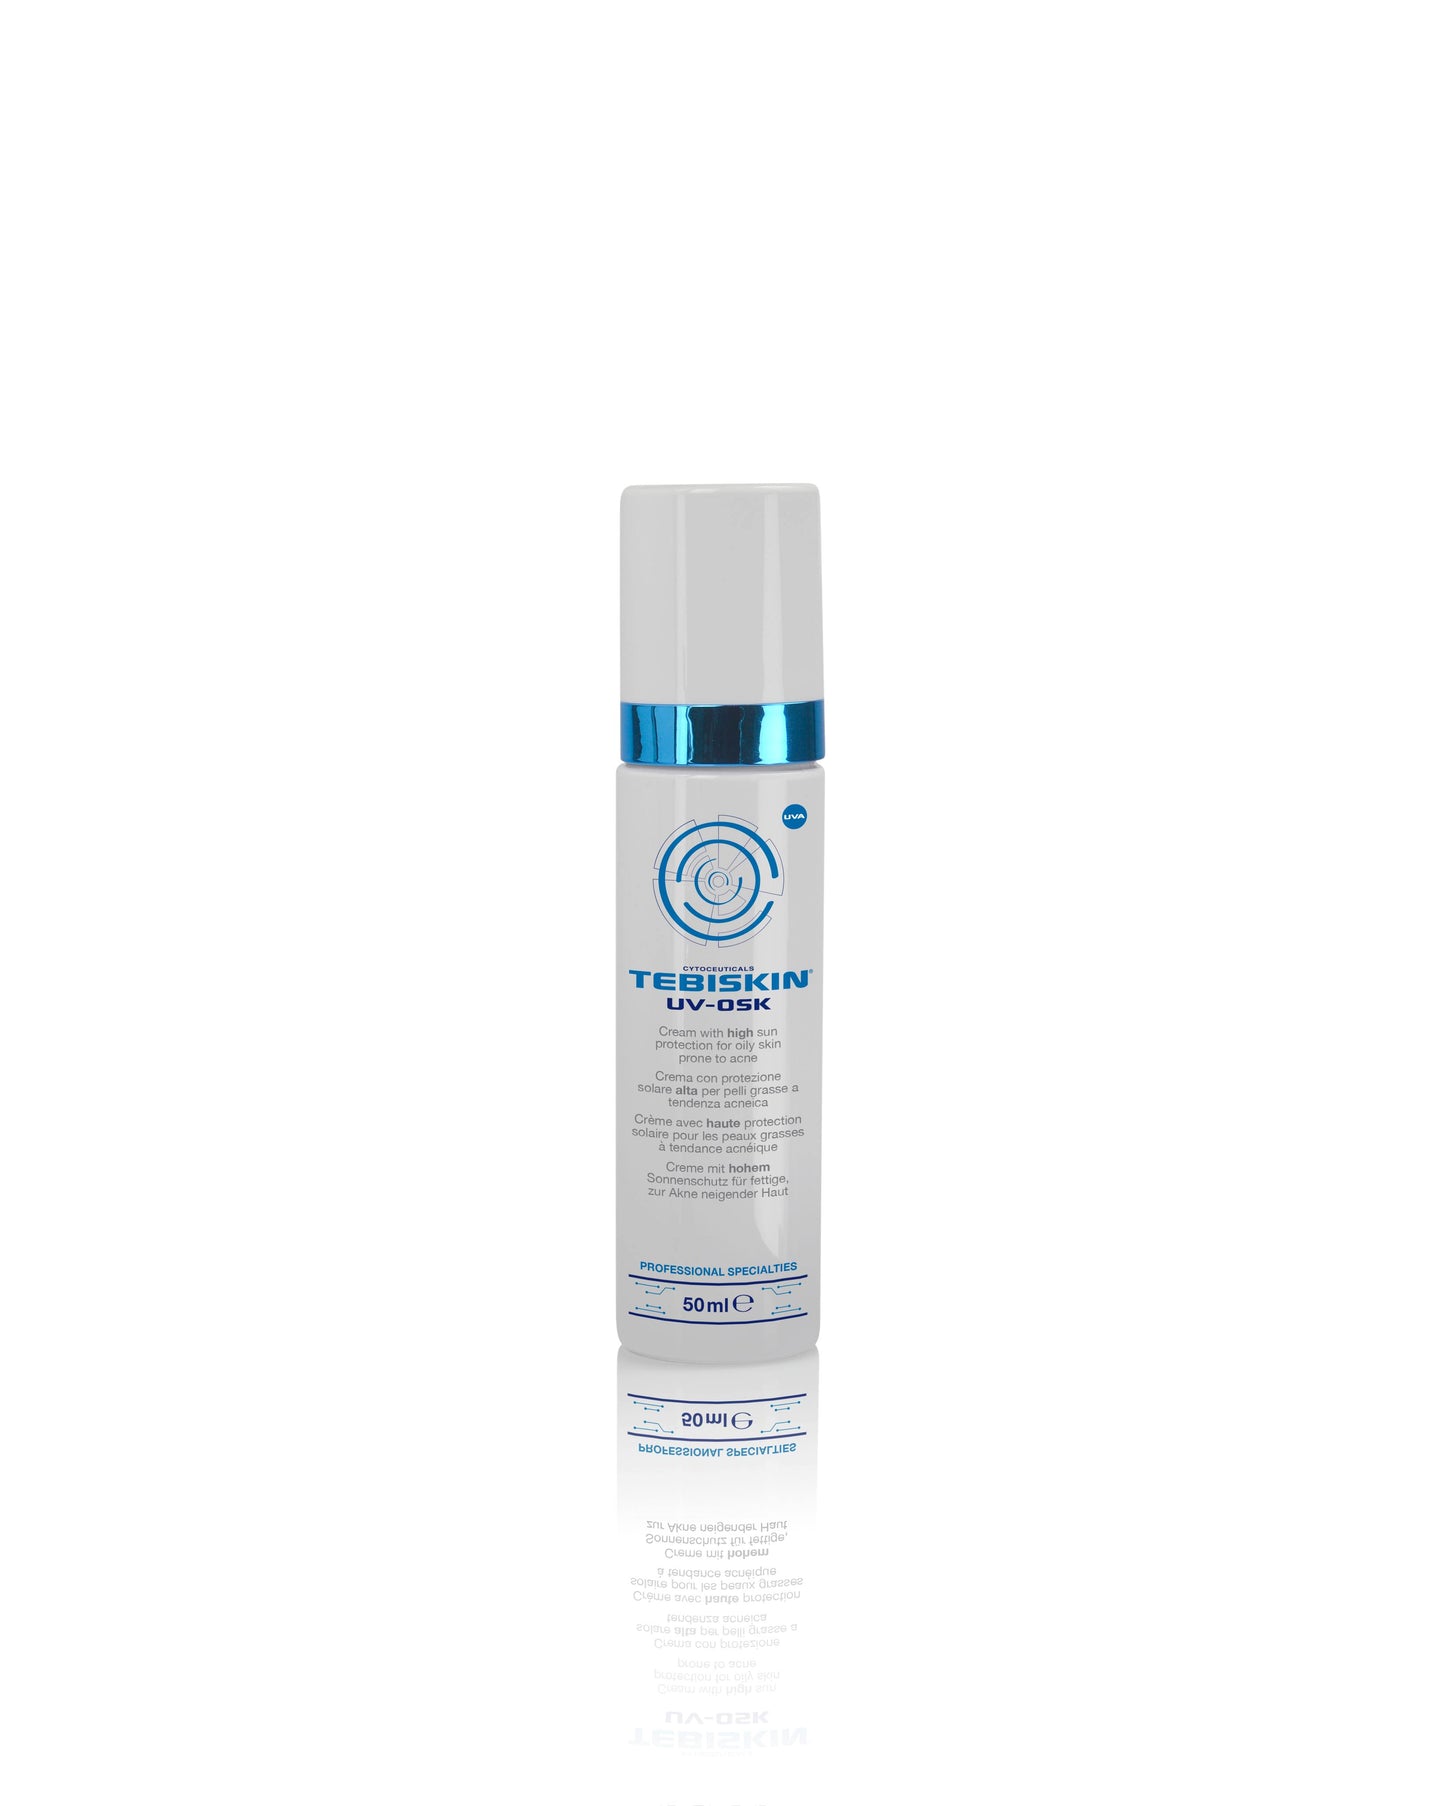 TEBISKIN® UV-OSK SPF 30 sunscreen for oily, acne-prone skin